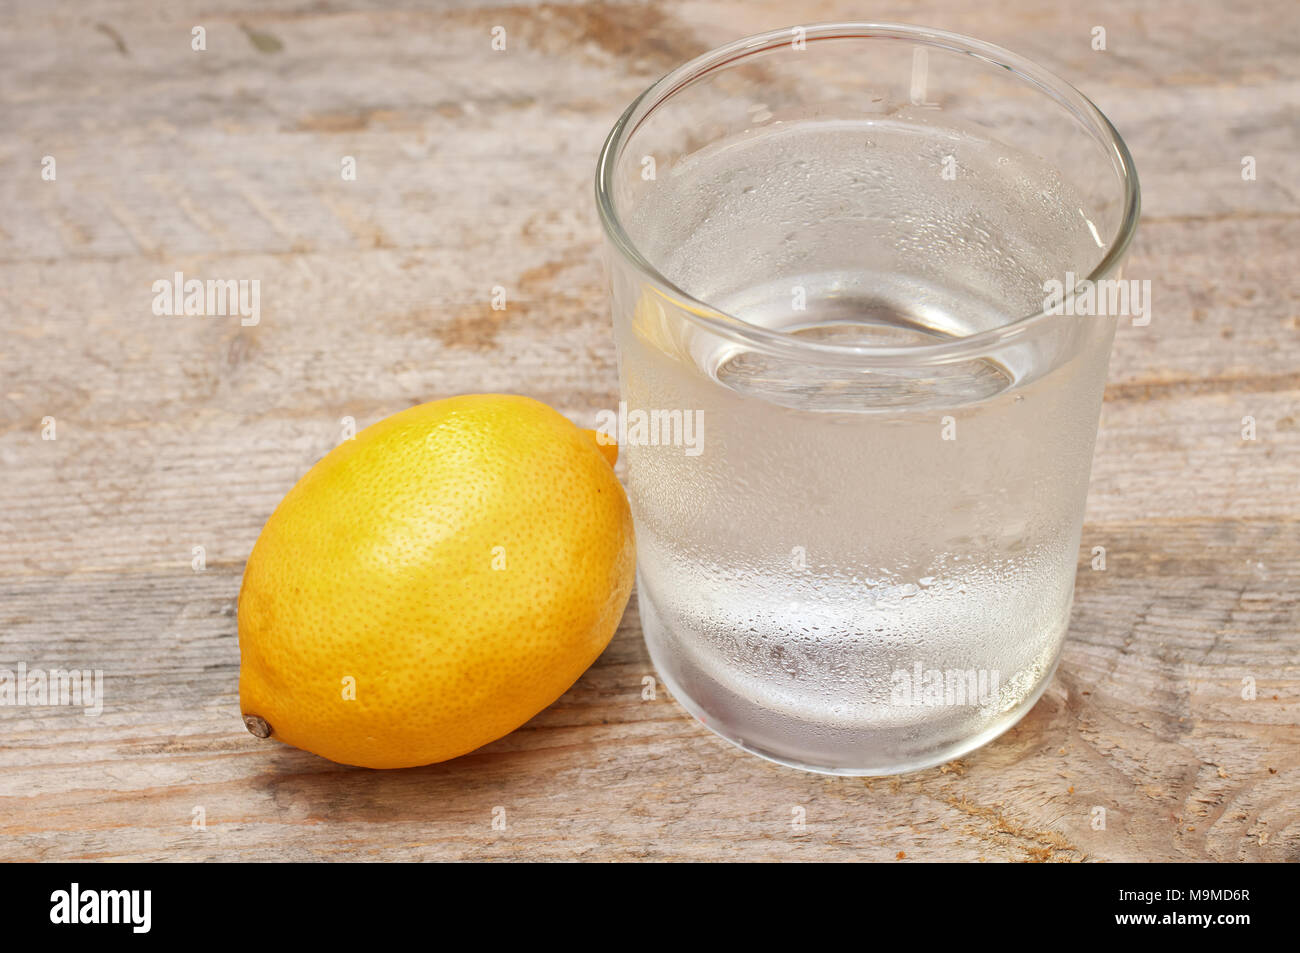 Вода с лимоном кислотой. Лимонная кислота. Стакан воды с лимоном. Стакан с лимоном. Лимонный сок в стакане.